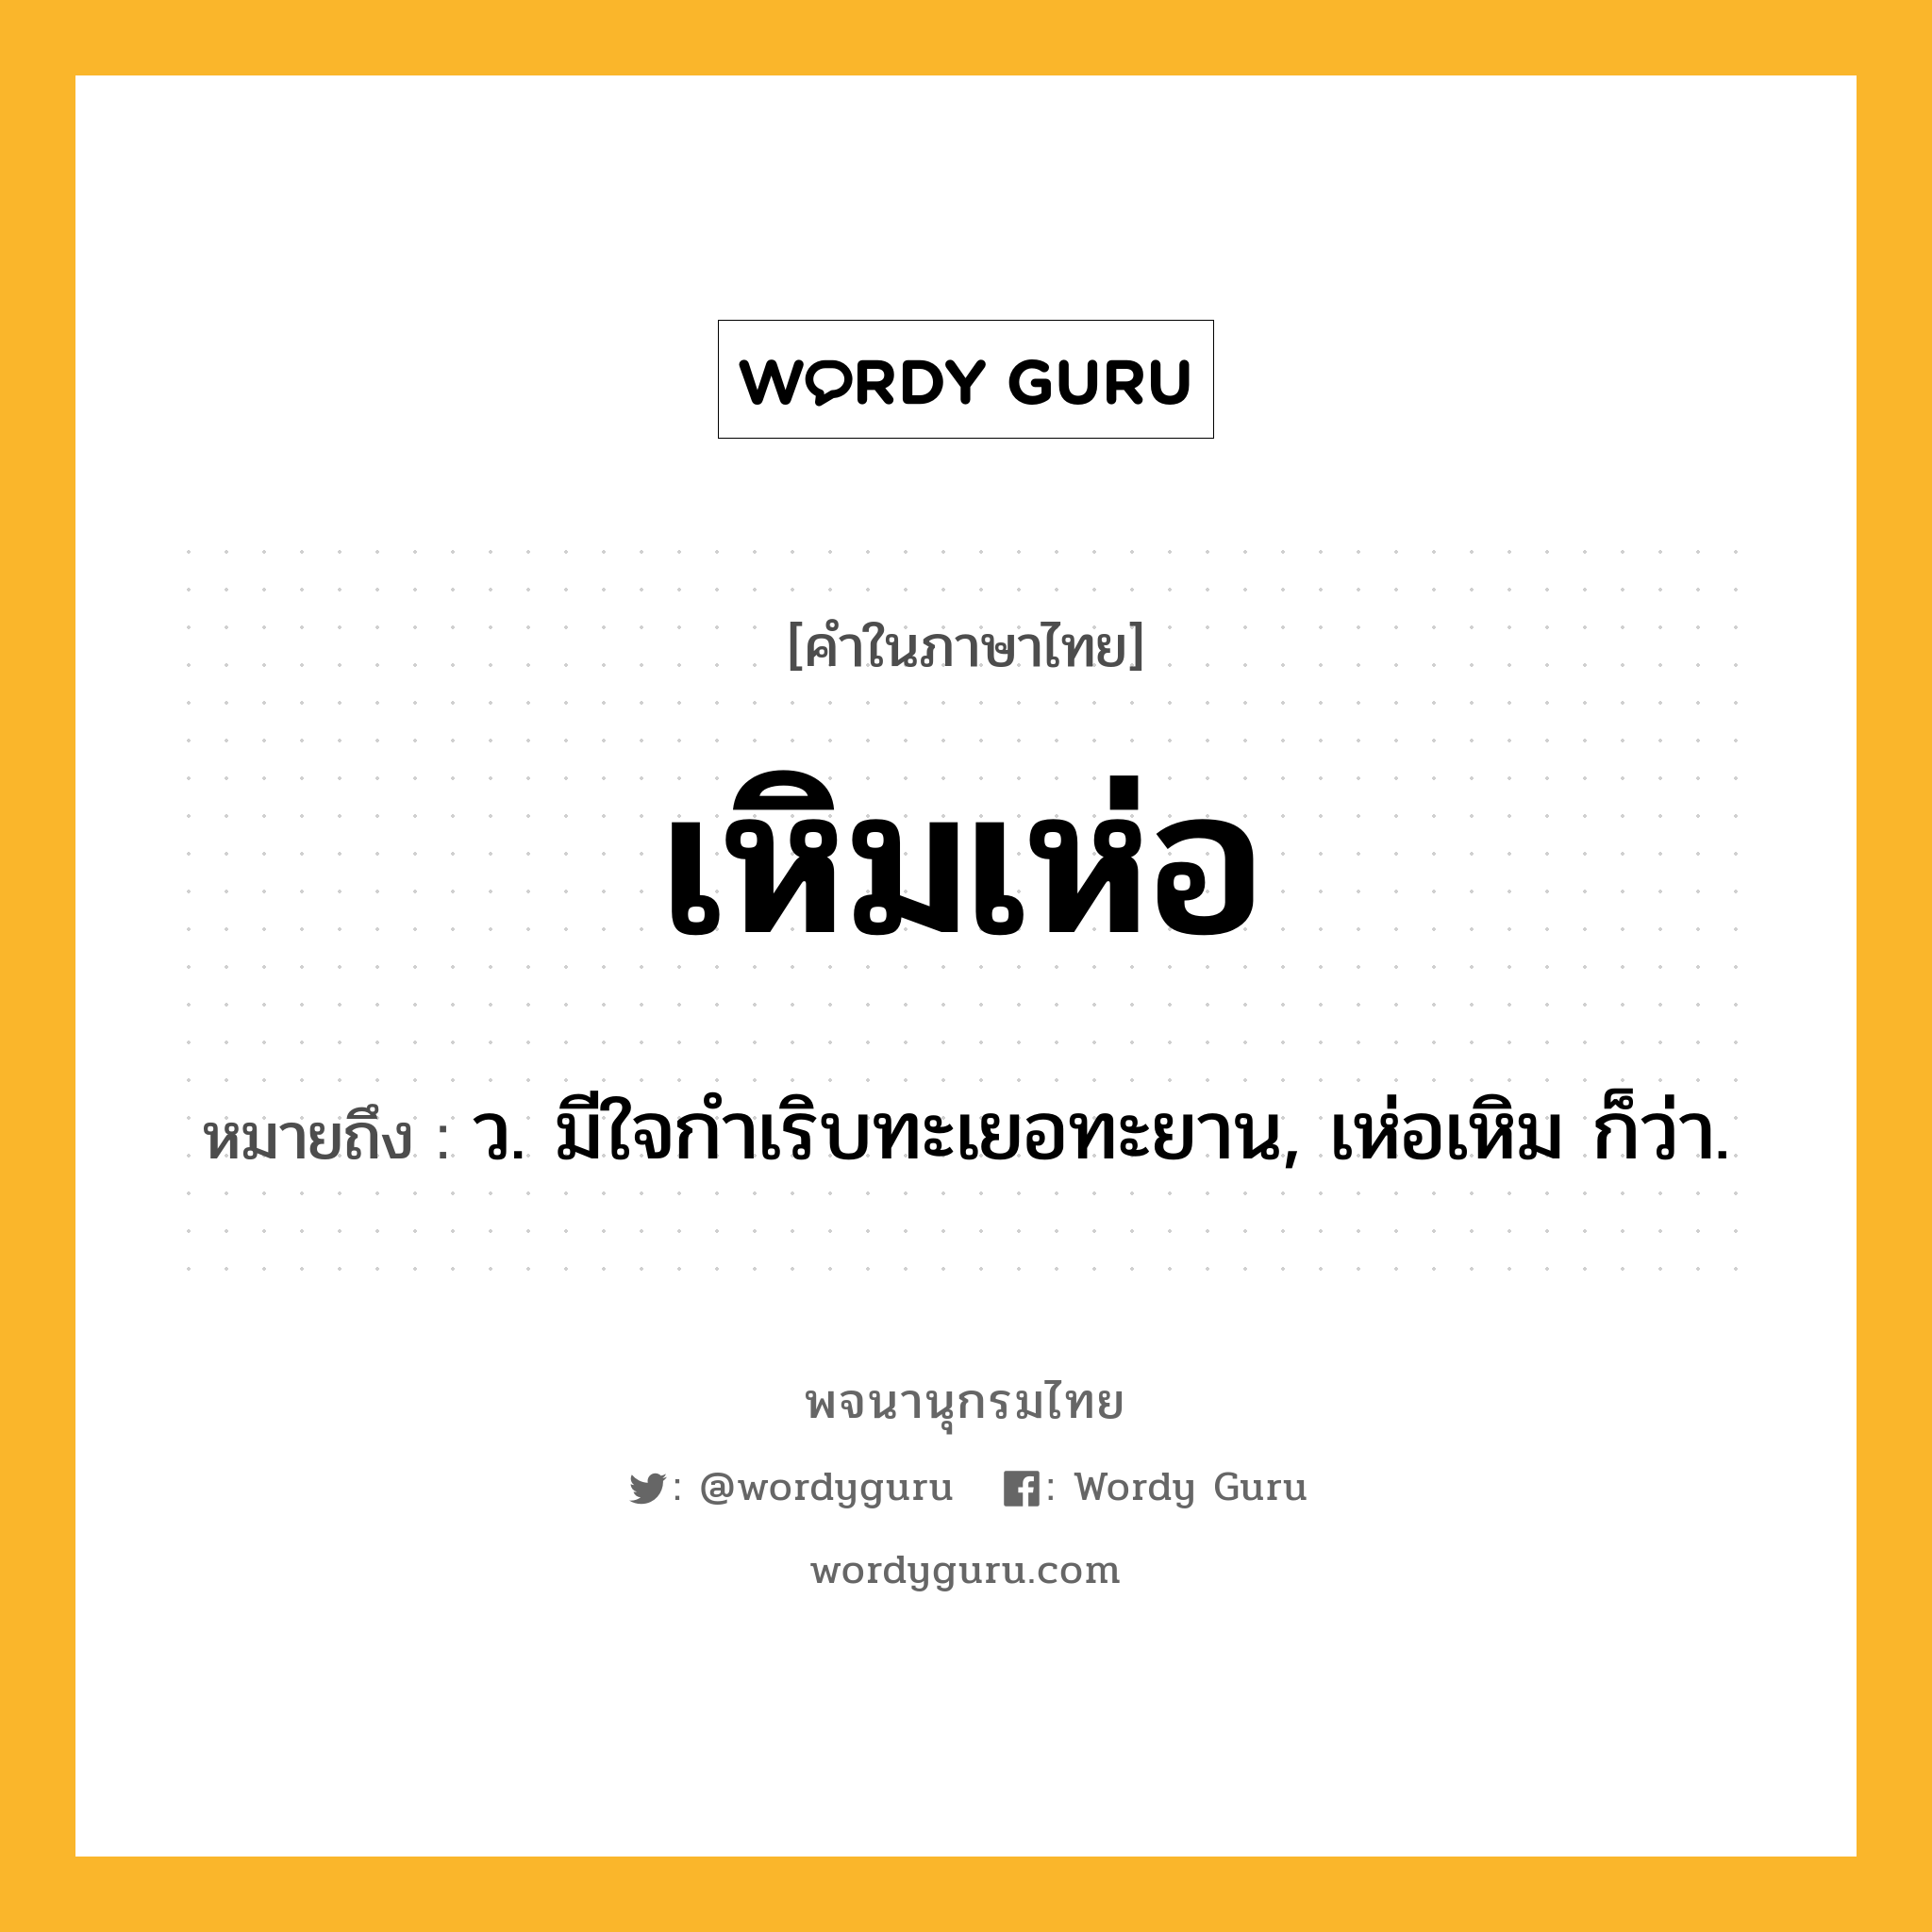 เหิมเห่อ ความหมาย หมายถึงอะไร?, คำในภาษาไทย เหิมเห่อ หมายถึง ว. มีใจกำเริบทะเยอทะยาน, เห่อเหิม ก็ว่า.